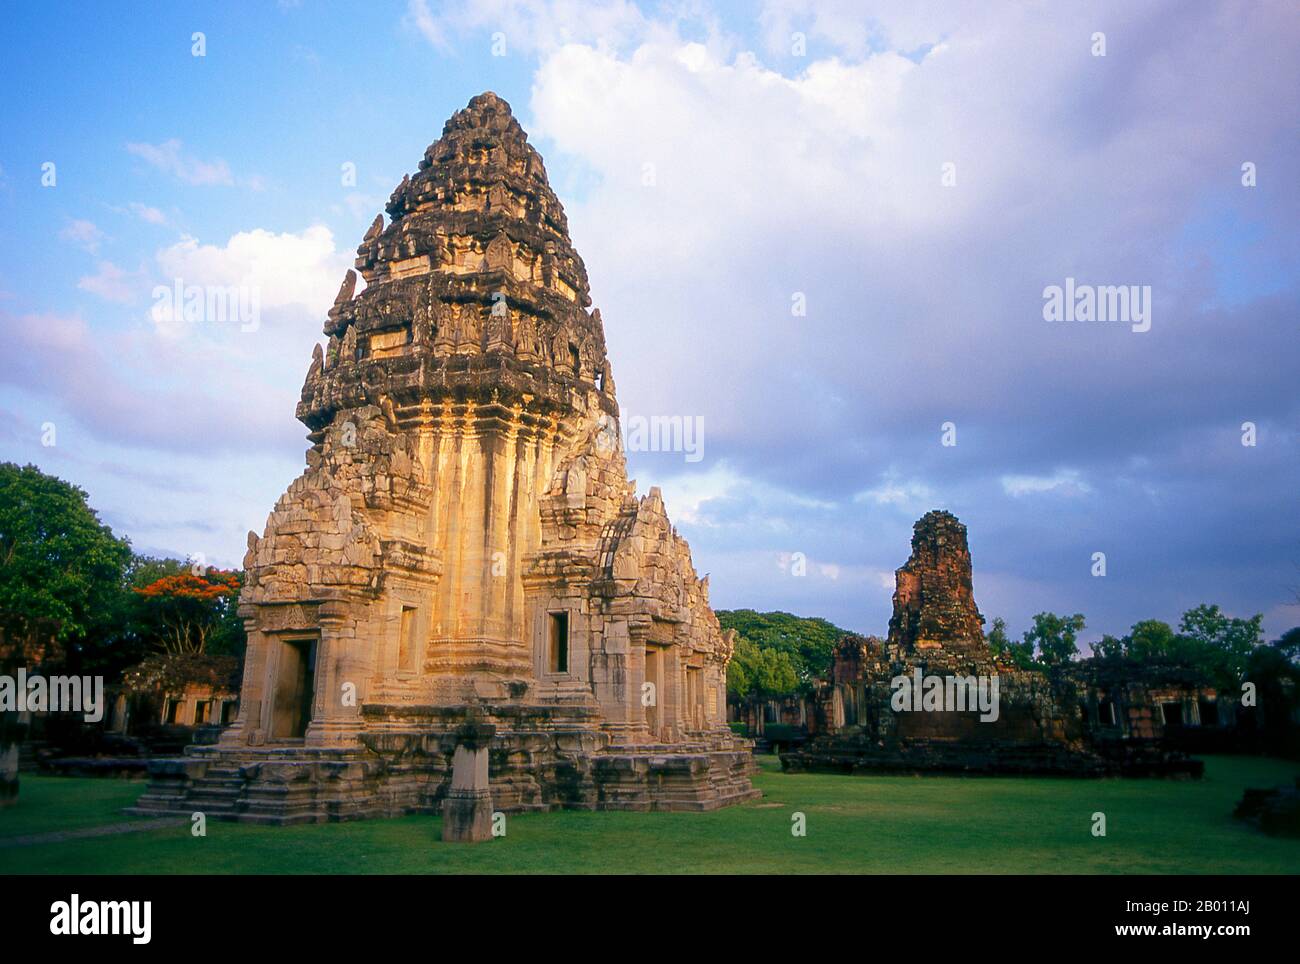 Thailand: Zentralheiligtum, Prasat hin Phimai, Phimai Historical Park, Nakhon Ratchasima Provinz. Phimai stammt aus dem 11. Und 12. Jahrhundert und war ein wichtiger buddhistischer Tempel und eine Stadt im Khmer-Reich. Der Komplex in Phimai stammt ursprünglich aus der Regierungszeit von Surayavarman II (r. 1113 - 1150), während der ersten Hälfte des 12. Jahrhunderts u.Z. Der Tempel wurde aus weißem, feinkörnigem Sandstein gebaut, im gleichen Stil wie Angkor Wat. Ebenso wie Angkor wurde auch Phimai zunächst dem Vishnu-Kult gewidmet. Der zentrale Turm des Heiligtums stammt aus dieser frühen Periode. Stockfoto